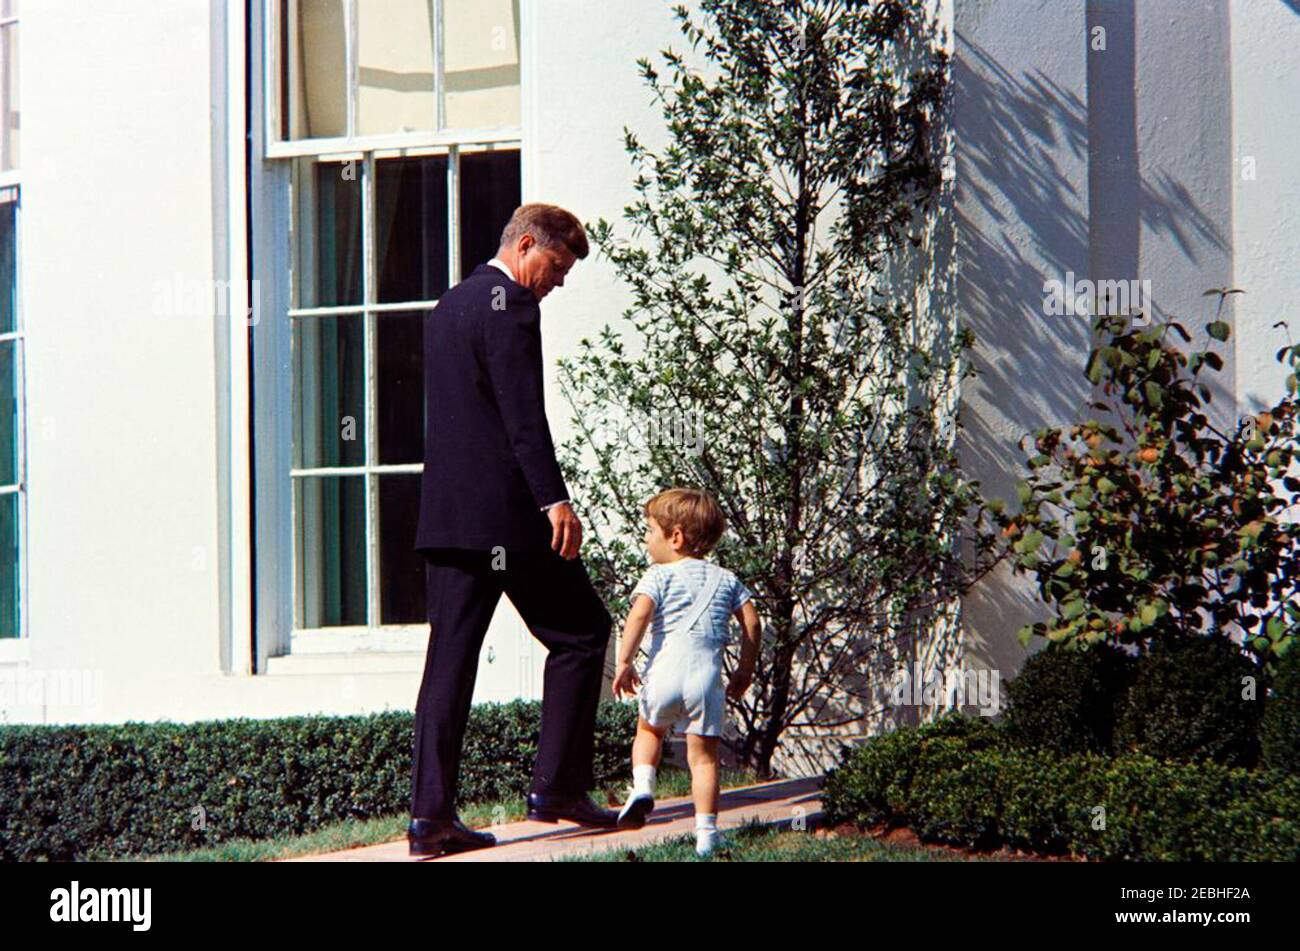 Präsident Kennedy mit John F. Kennedy, Jr. (JFK, Jr.). Präsident John F. Kennedy geht mit seinem Sohn, John F. Kennedy, Jr., vom South Lawn zur West Wing Colonnade des Weißen Hauses, Washington, D.C. Stockfoto